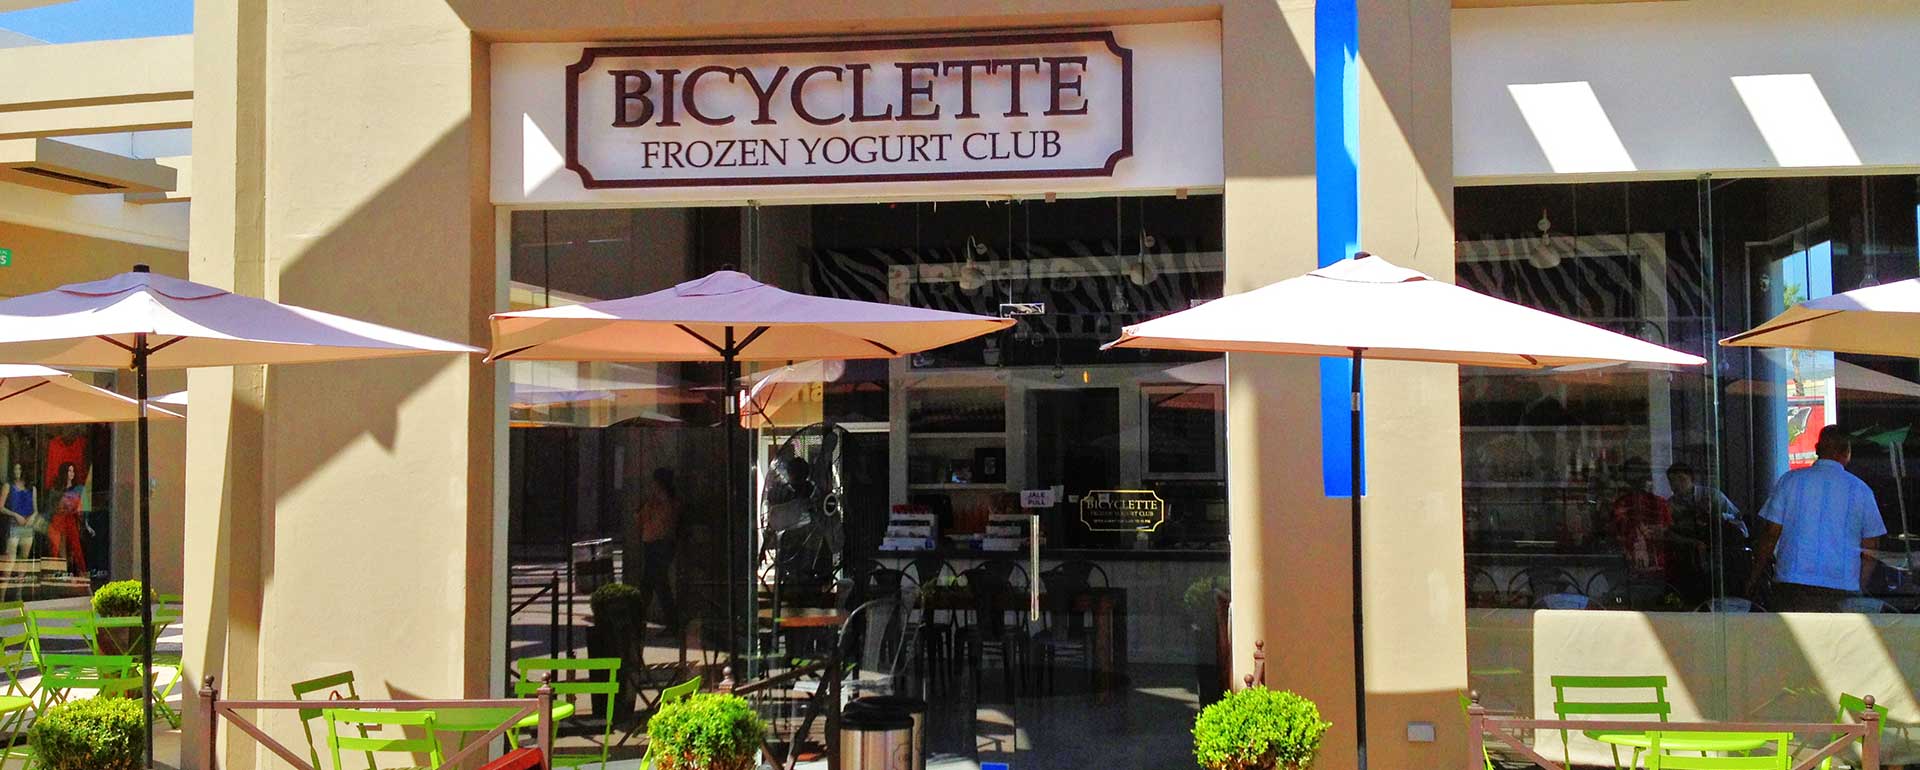 BICYCLETTE-Frozen-Yogurt-Club-1920x770px